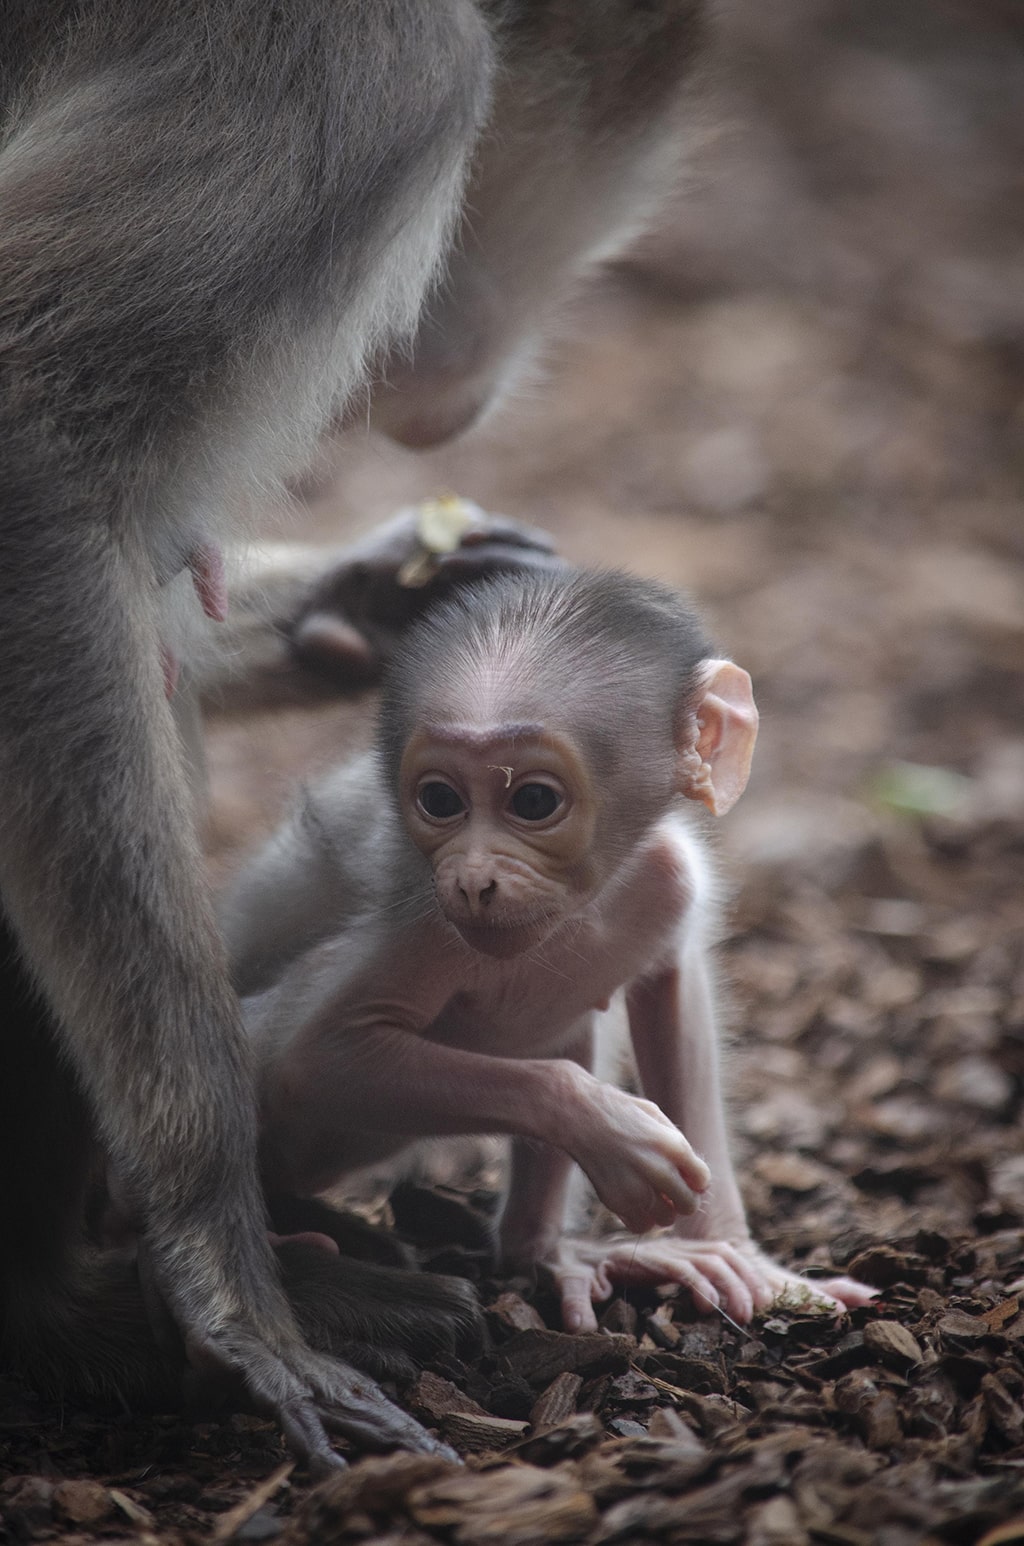 BIOPARC Valencia conmemora el Día del Medio Ambiente con el nacimiento de un primate en grave peligro de extinción